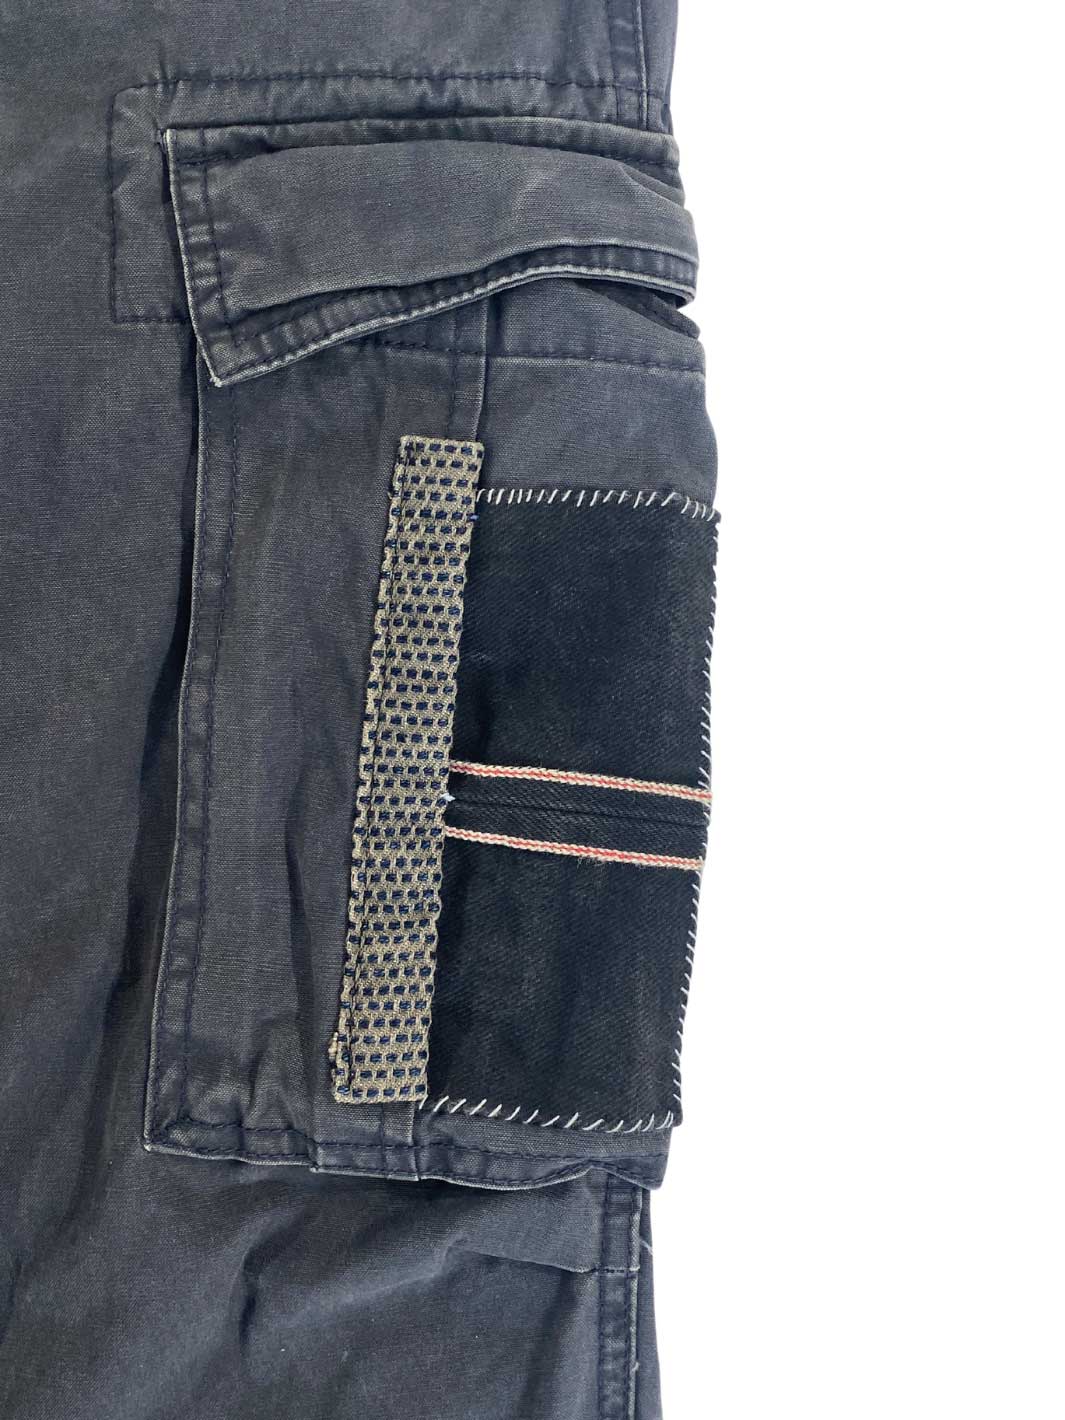 Männer Vintage Cargo Hose mit zwei großen aufgesetzten Taschen auf Oberschenkelhöhe mit Jeansbesatz Größe 33/32